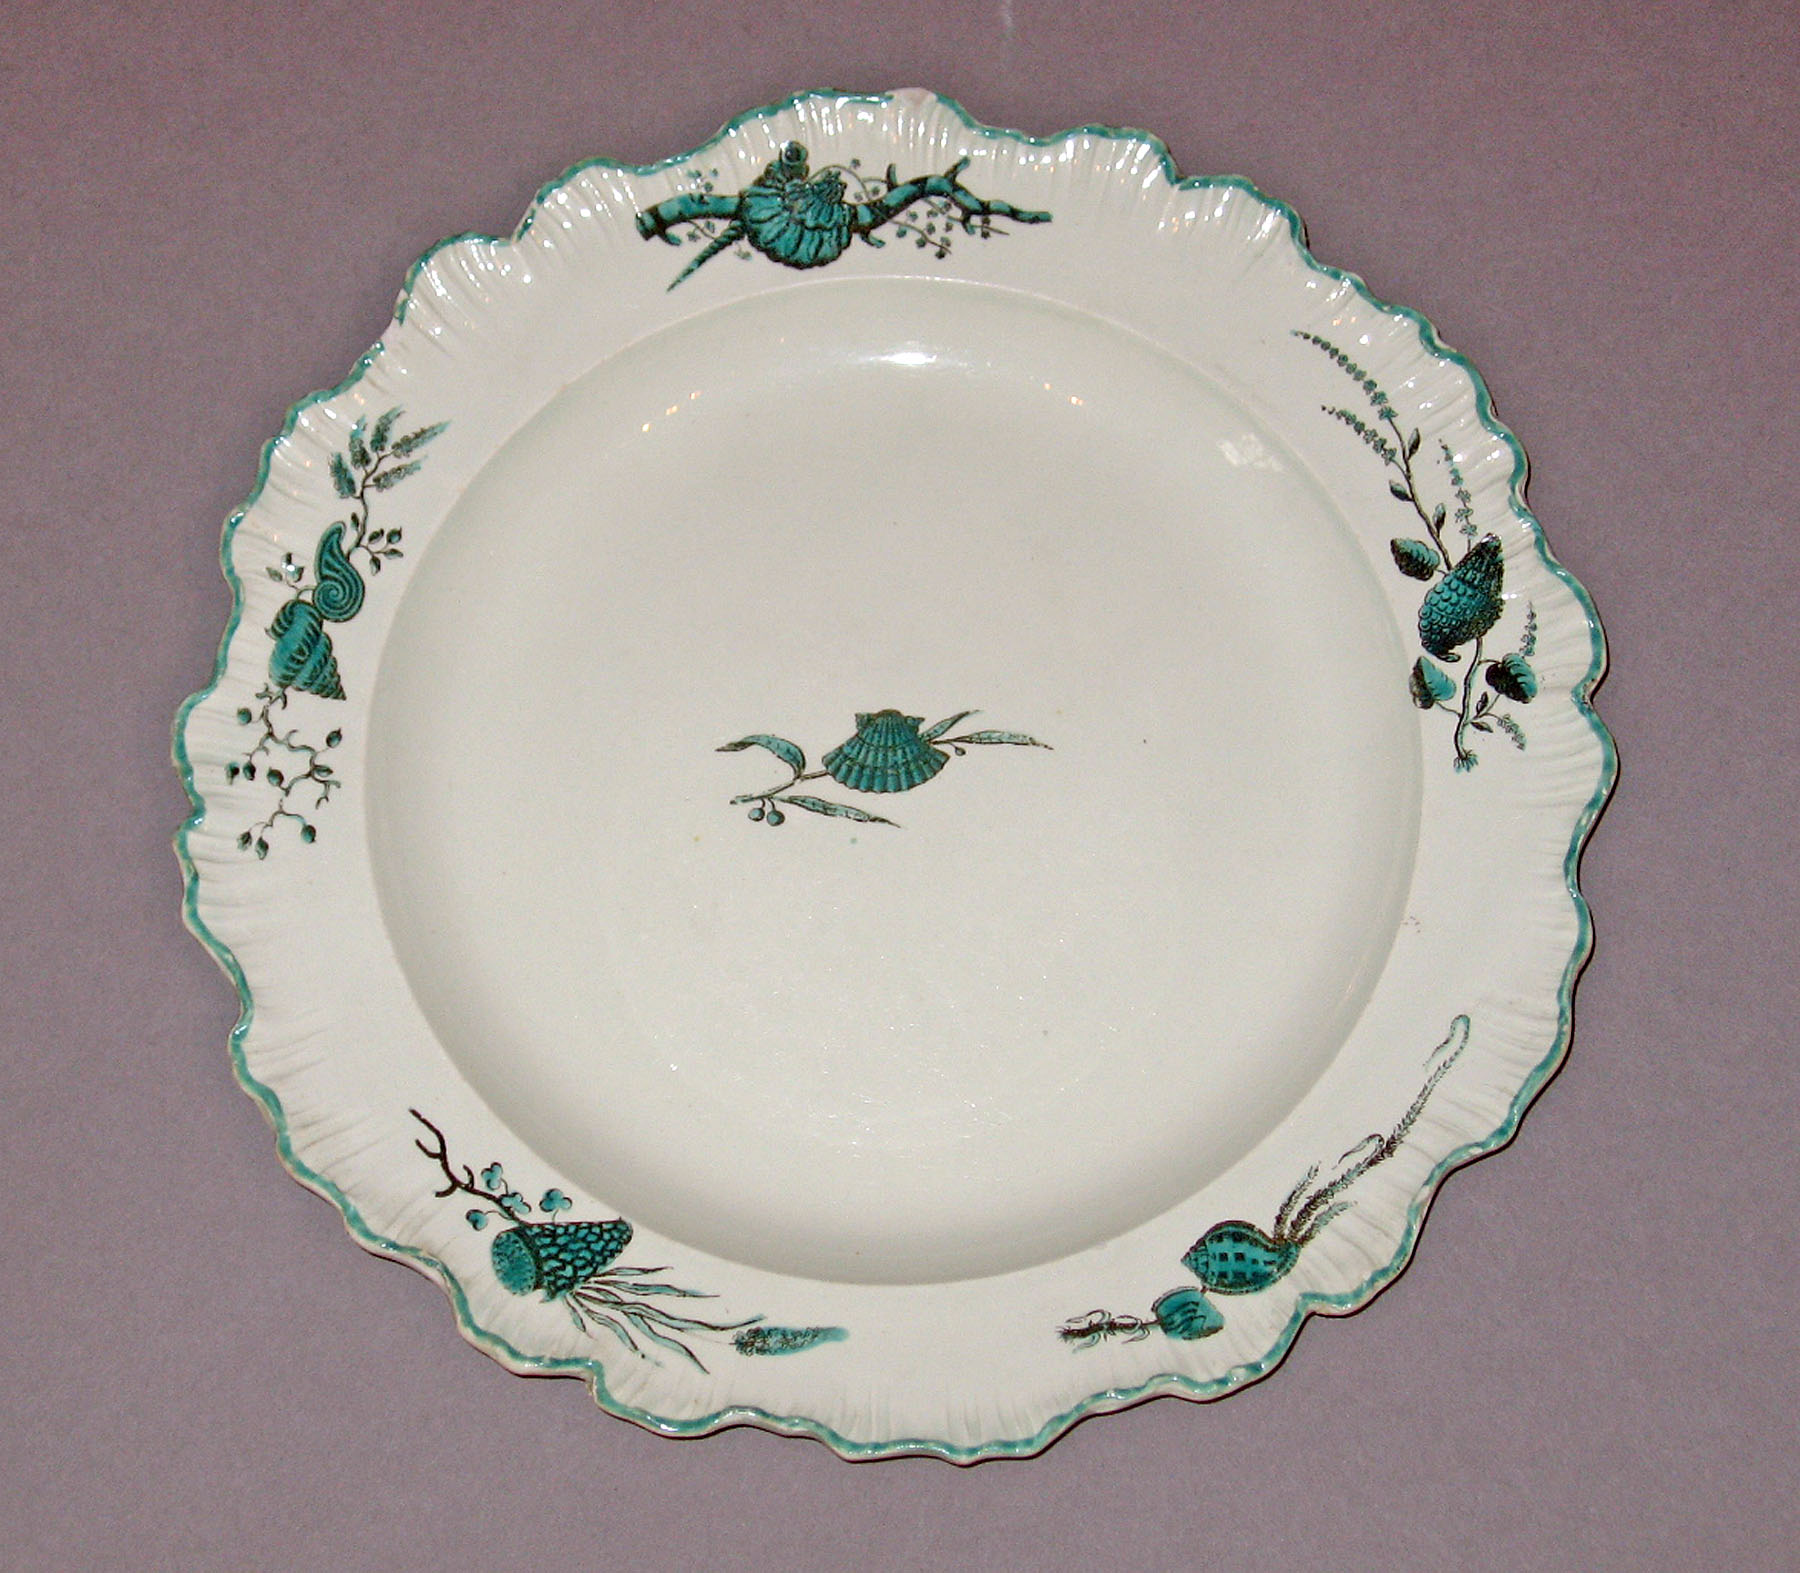 1960.0147.001 Creamware plate